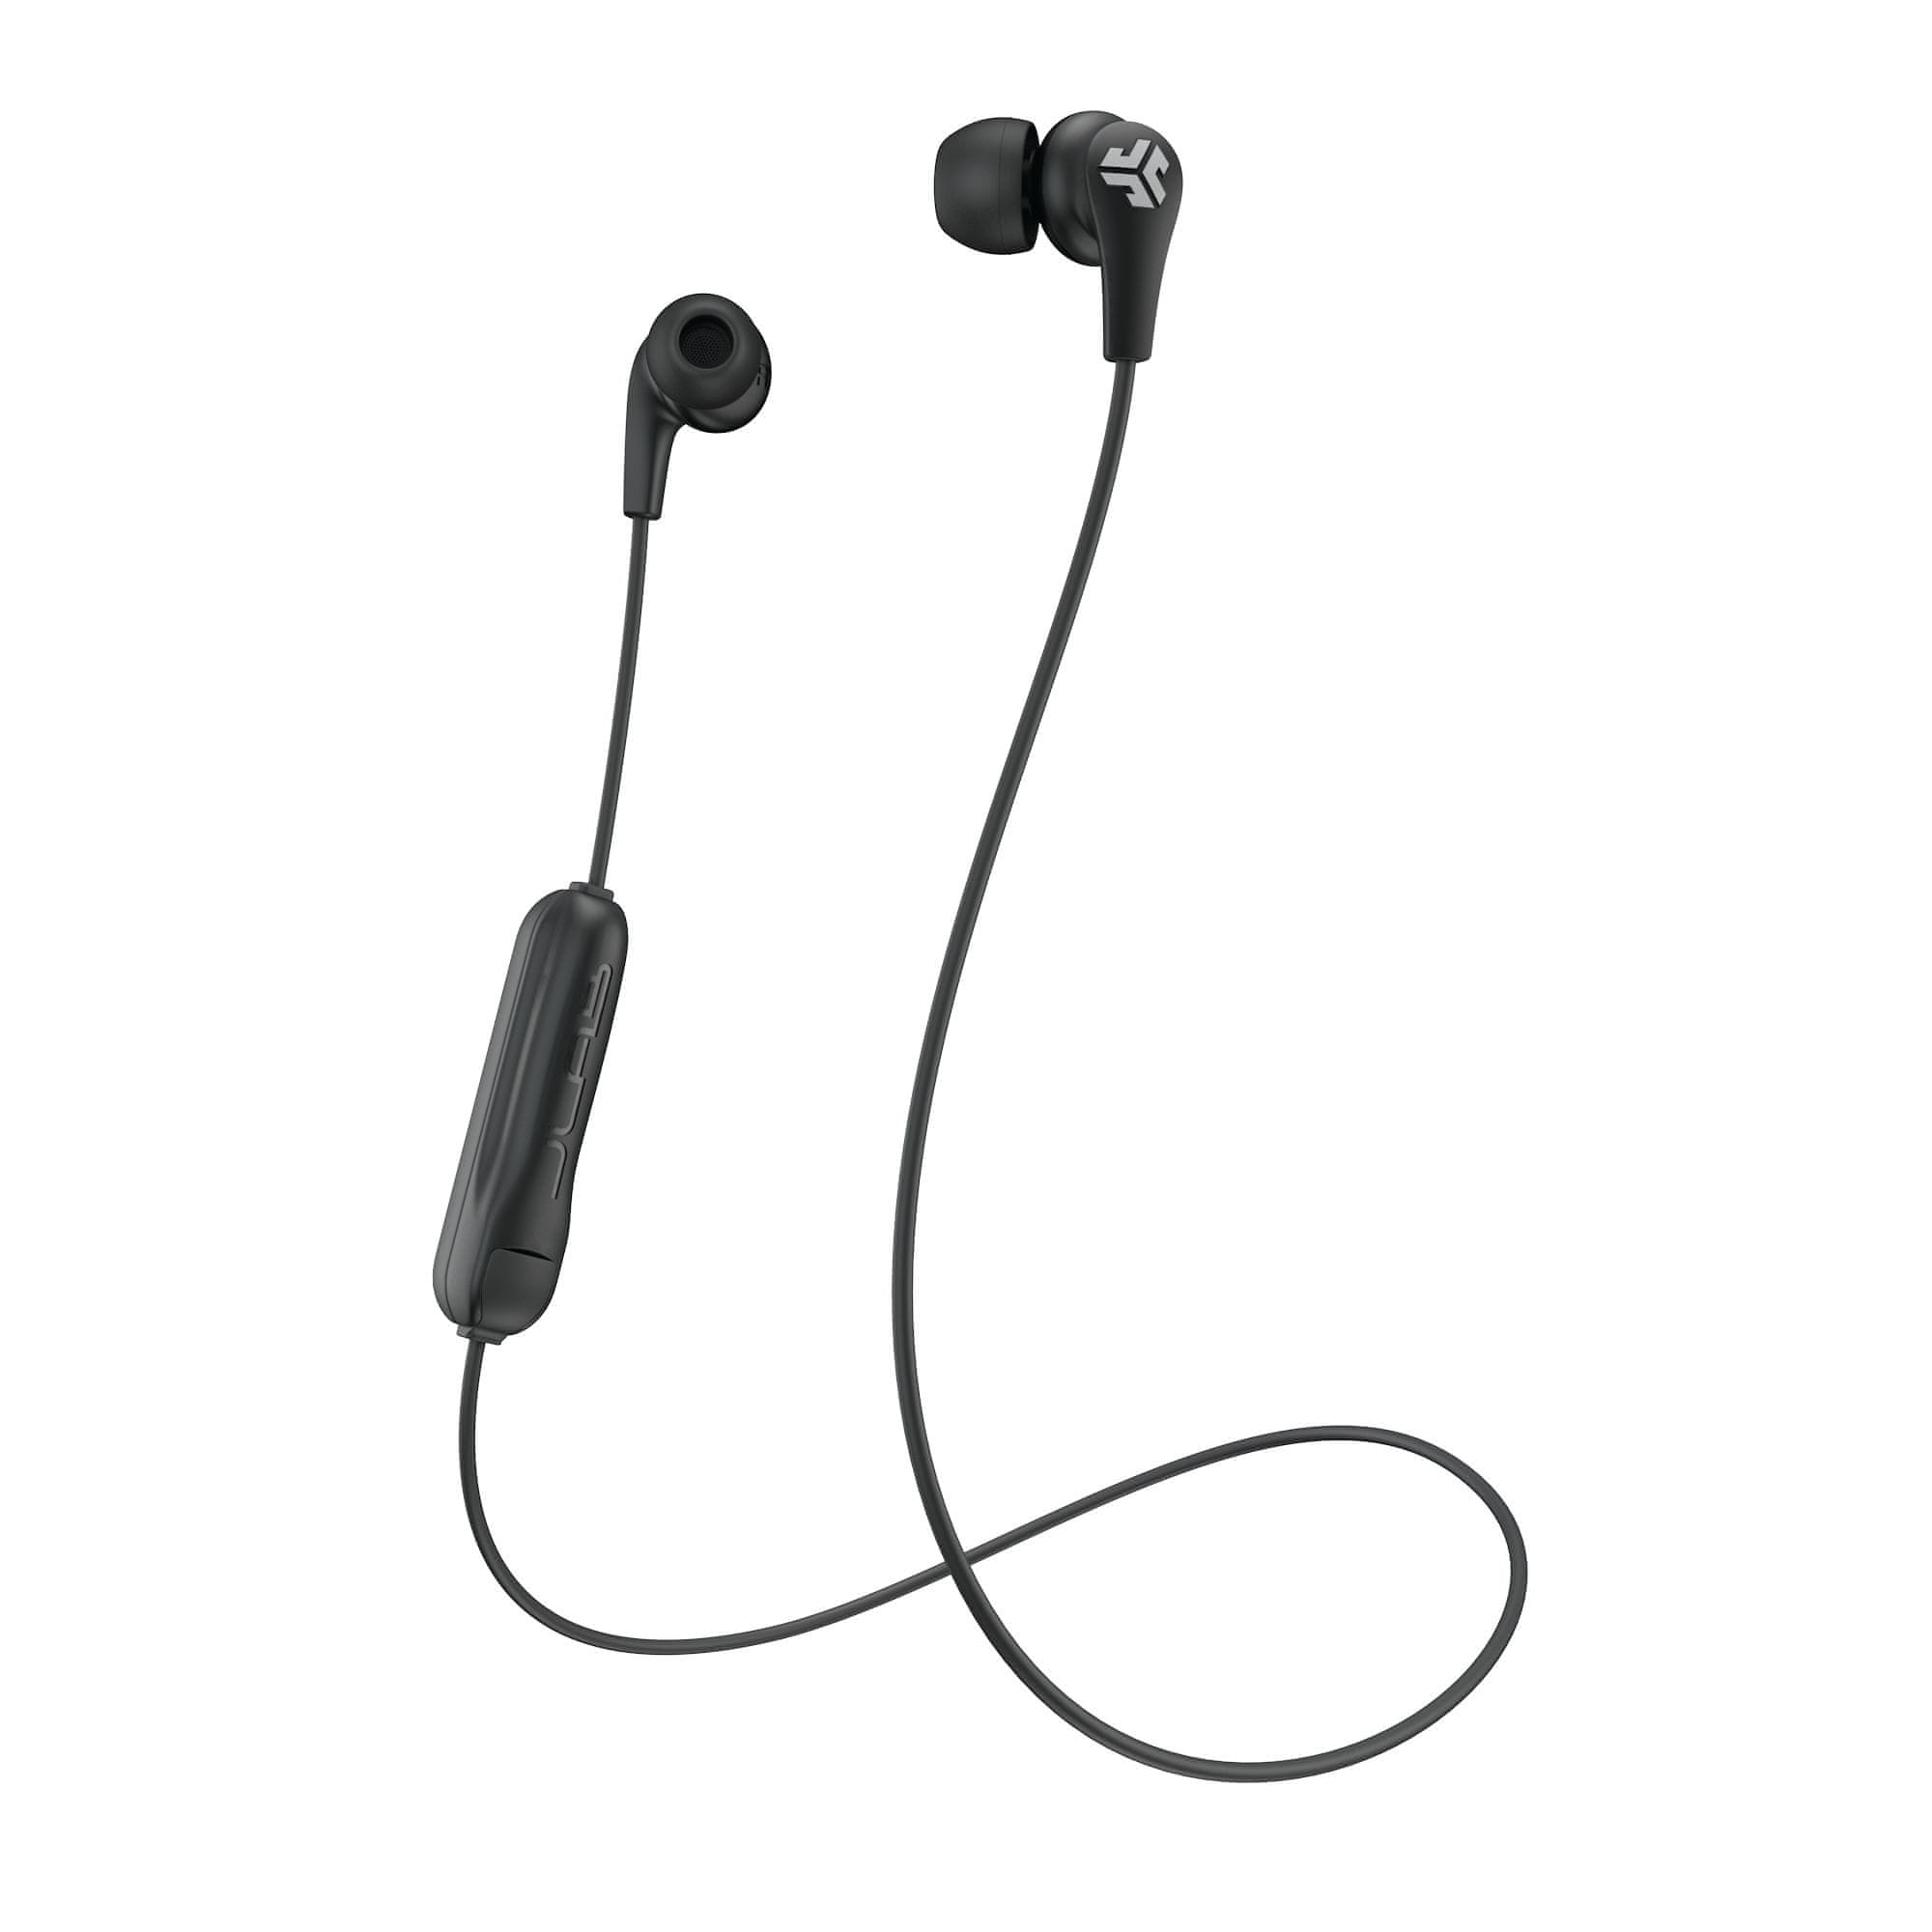  sodobne Bluetooth slušalke jlab za brezžične ušesne slušalke ip55 hiter odziv odličen zvok hitro polnjenje dolgo življenje udobno v ušesih lahek izenačevalnik za nastavitev zvoka 